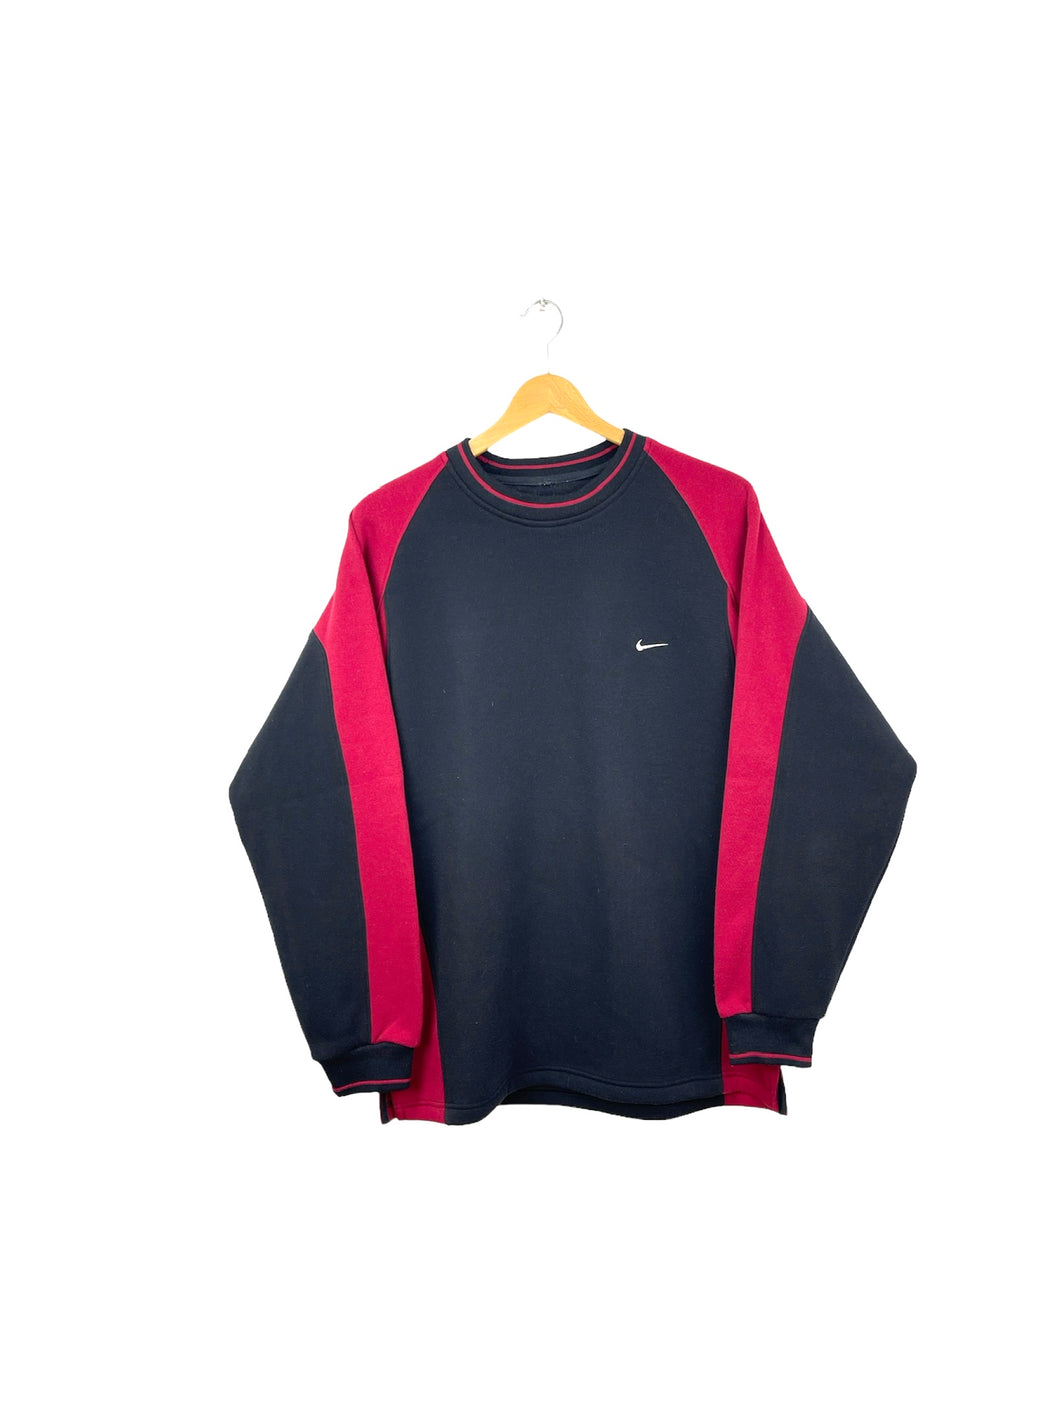 Nike Sweatshirt - XLarge